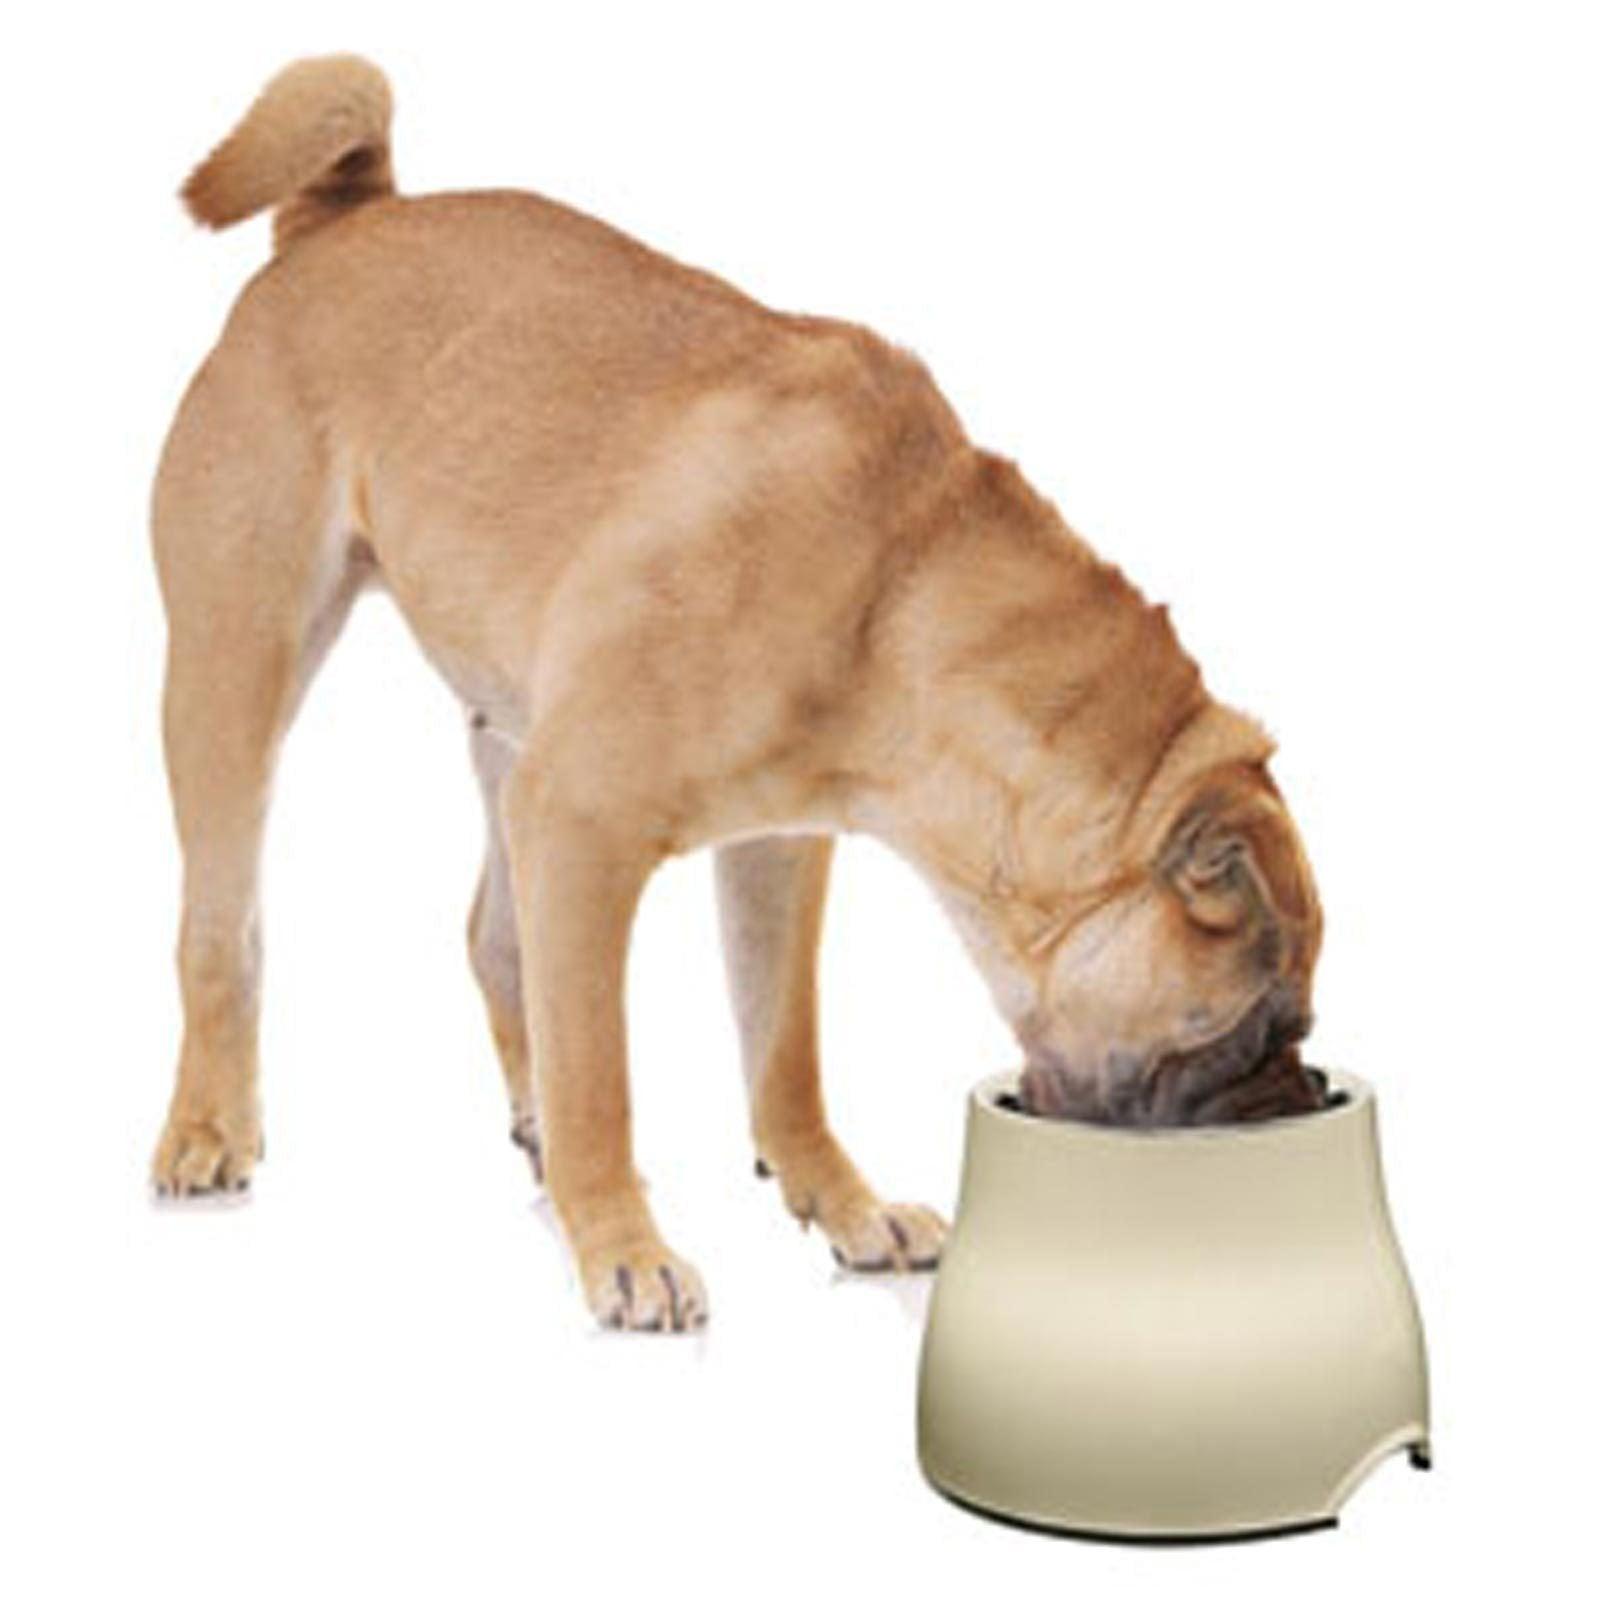 Dogit 2 in 1 Elevated Dog Feeding Bowl Large Black